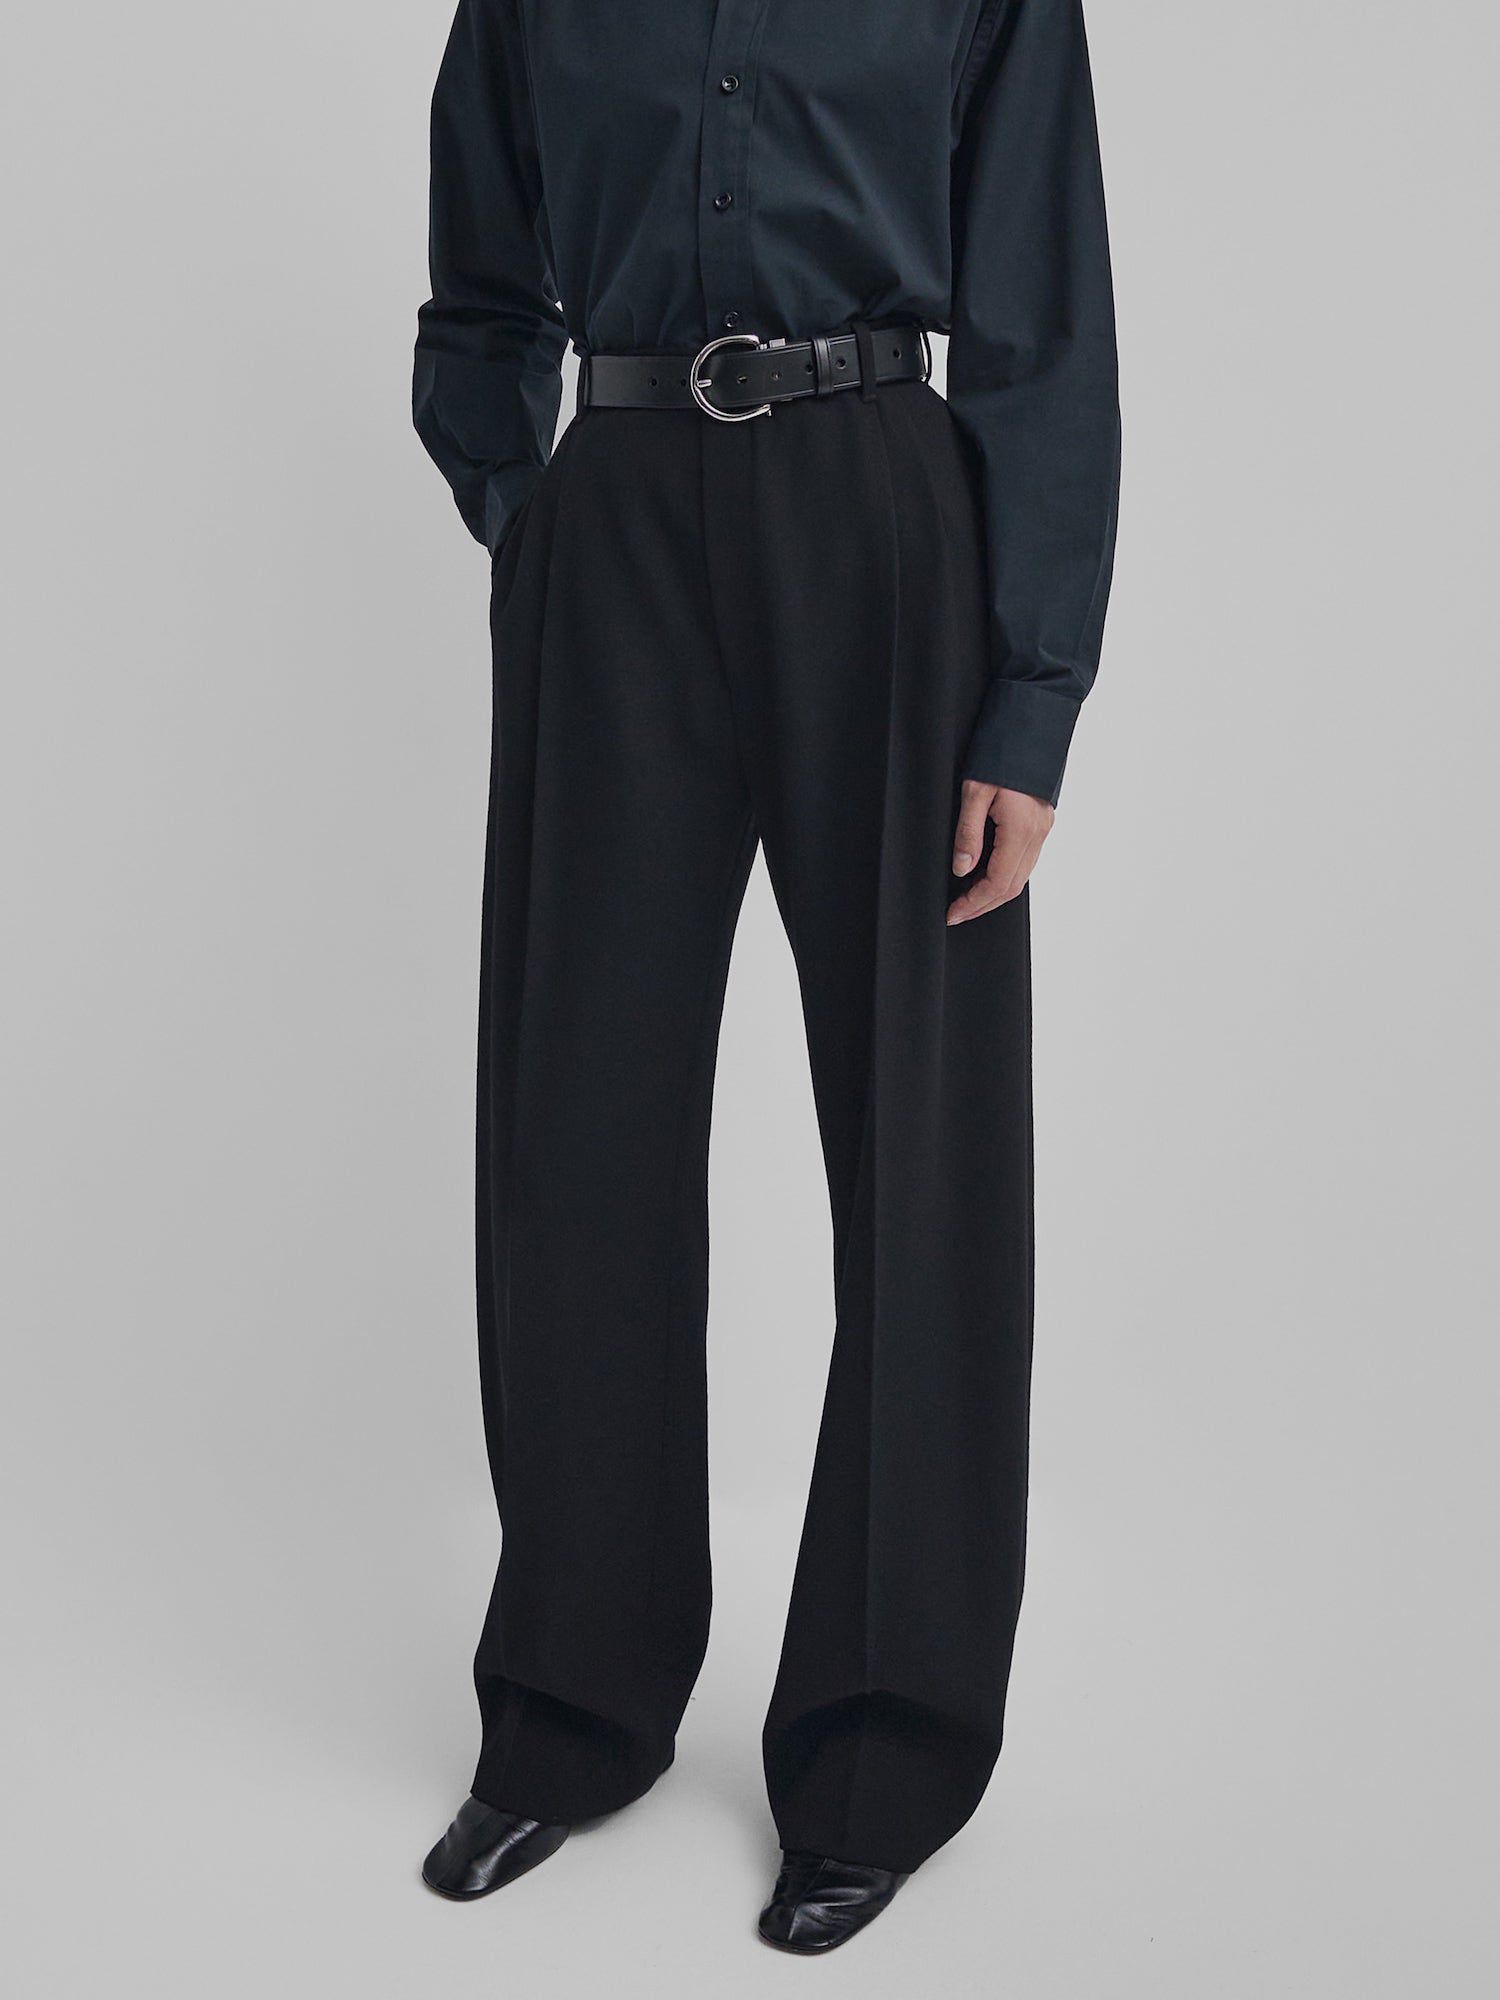 O modelo tem calças pretas, cinto, camisa de botão e sapatos com um dedo do pé quadrado de Phoebe Philo